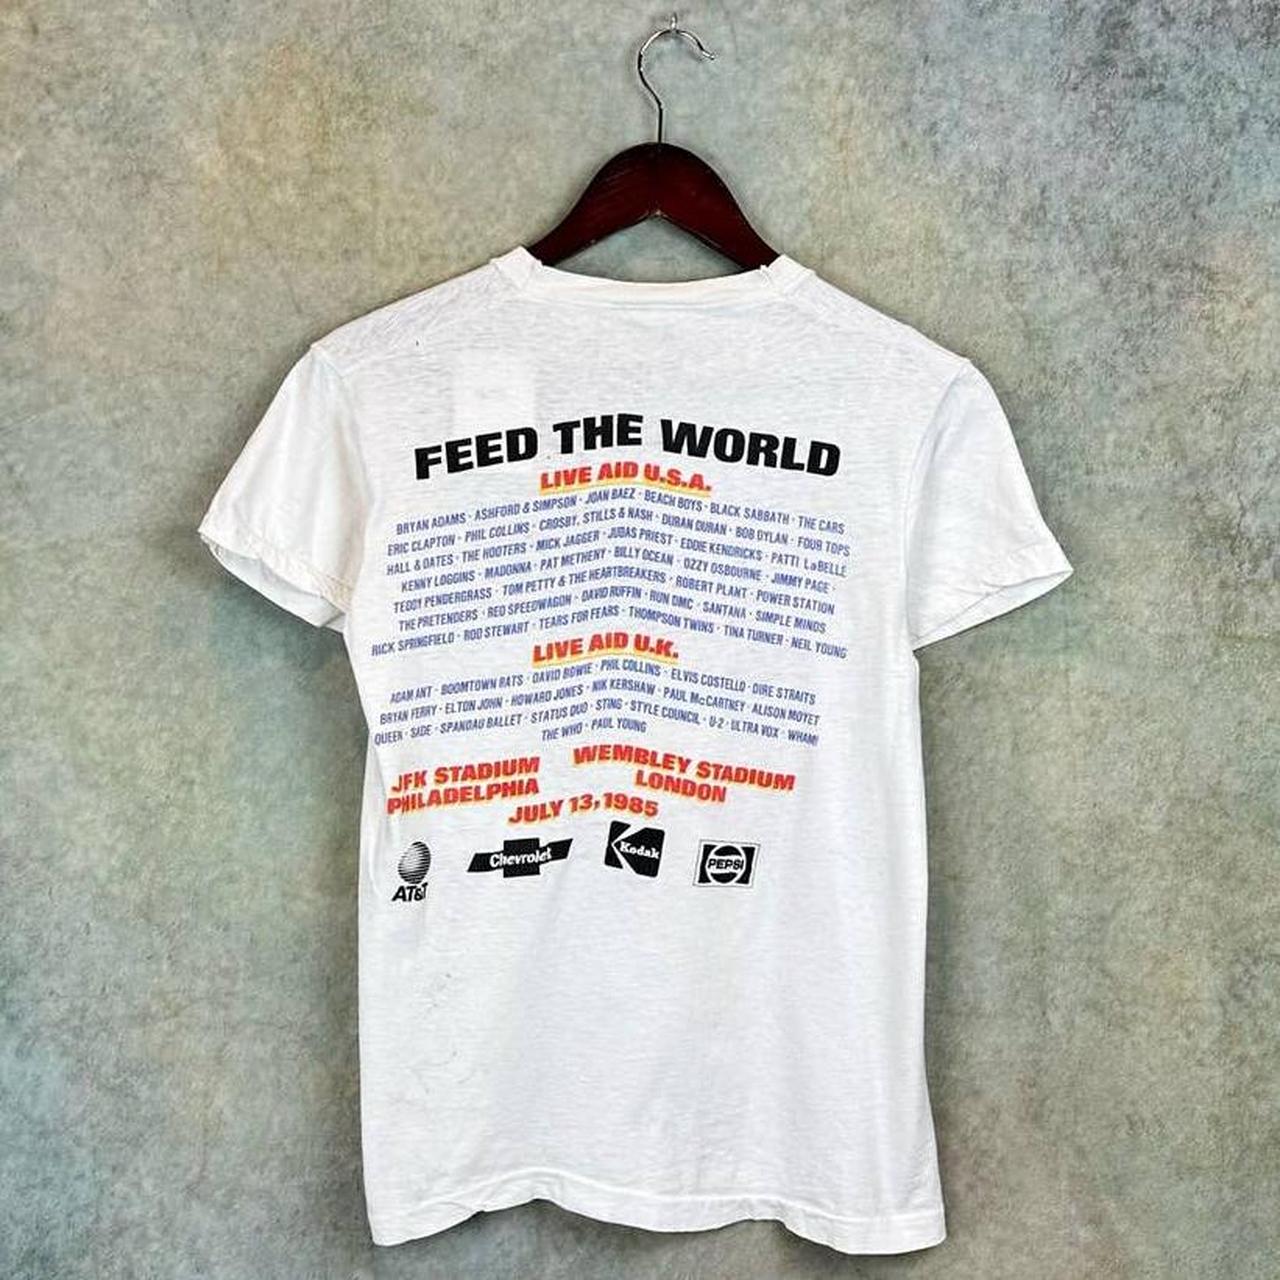 Live Aid Retro 1985 Concert T-Shirt - Men's & Women's Vintage